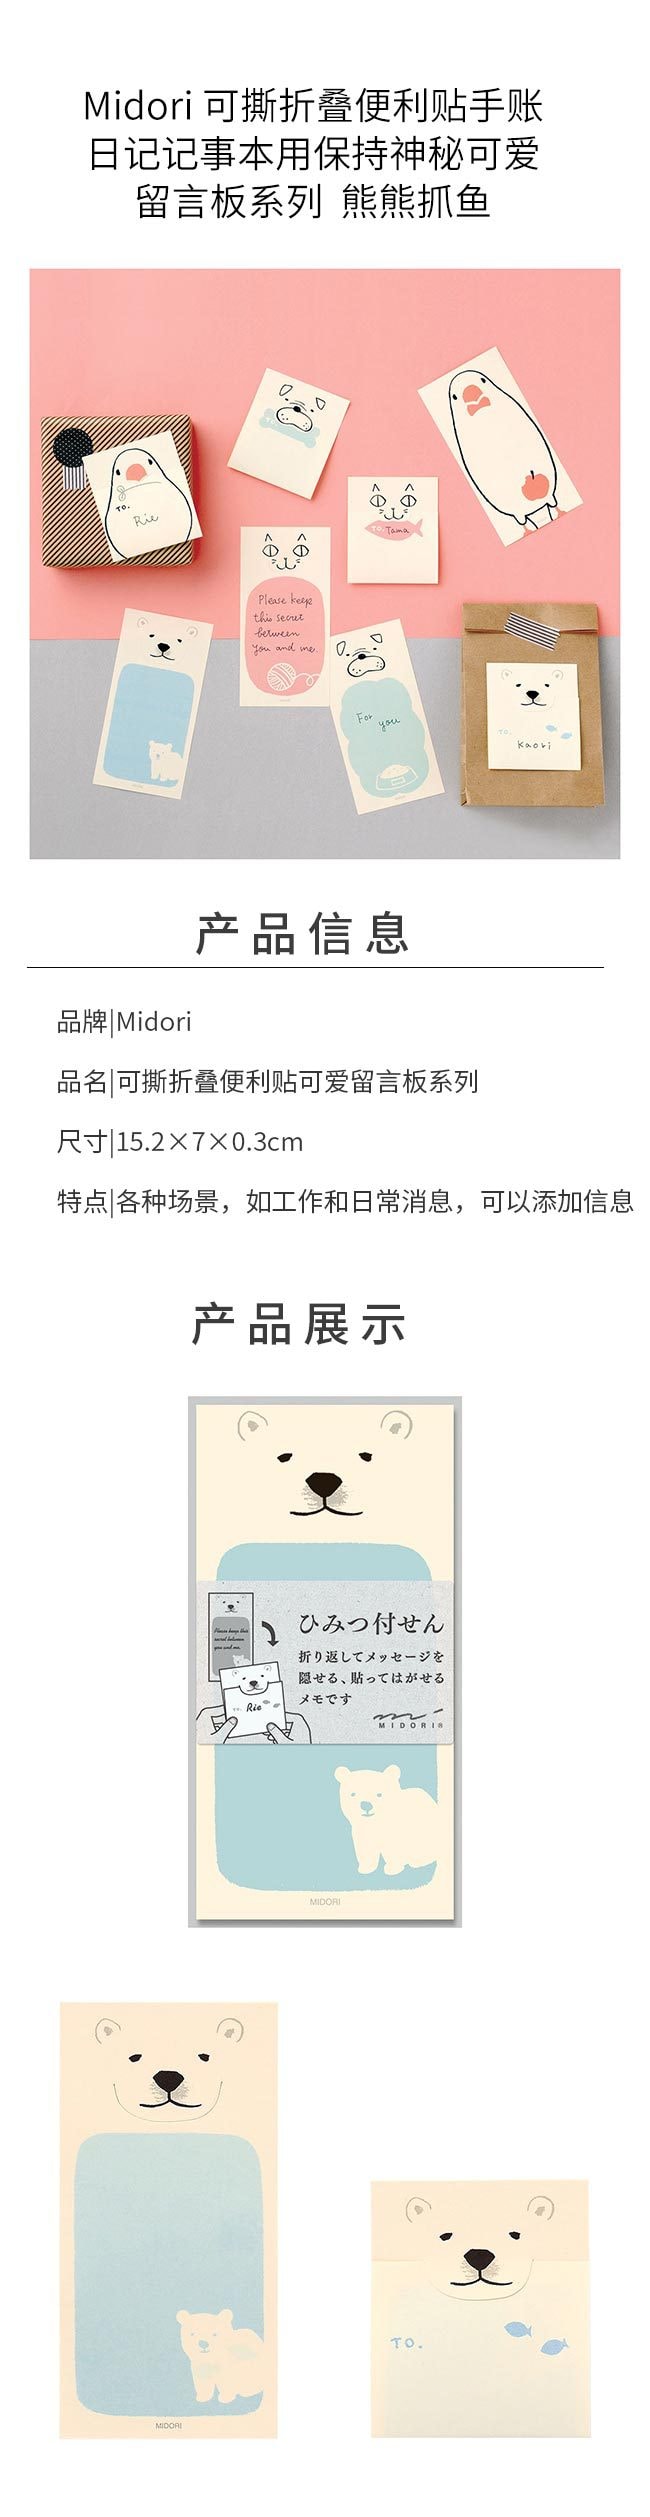 【文具週邊】日本Midori 可折疊便利貼秘密留言卡 創意便利貼 20枚入 熊熊抓魚